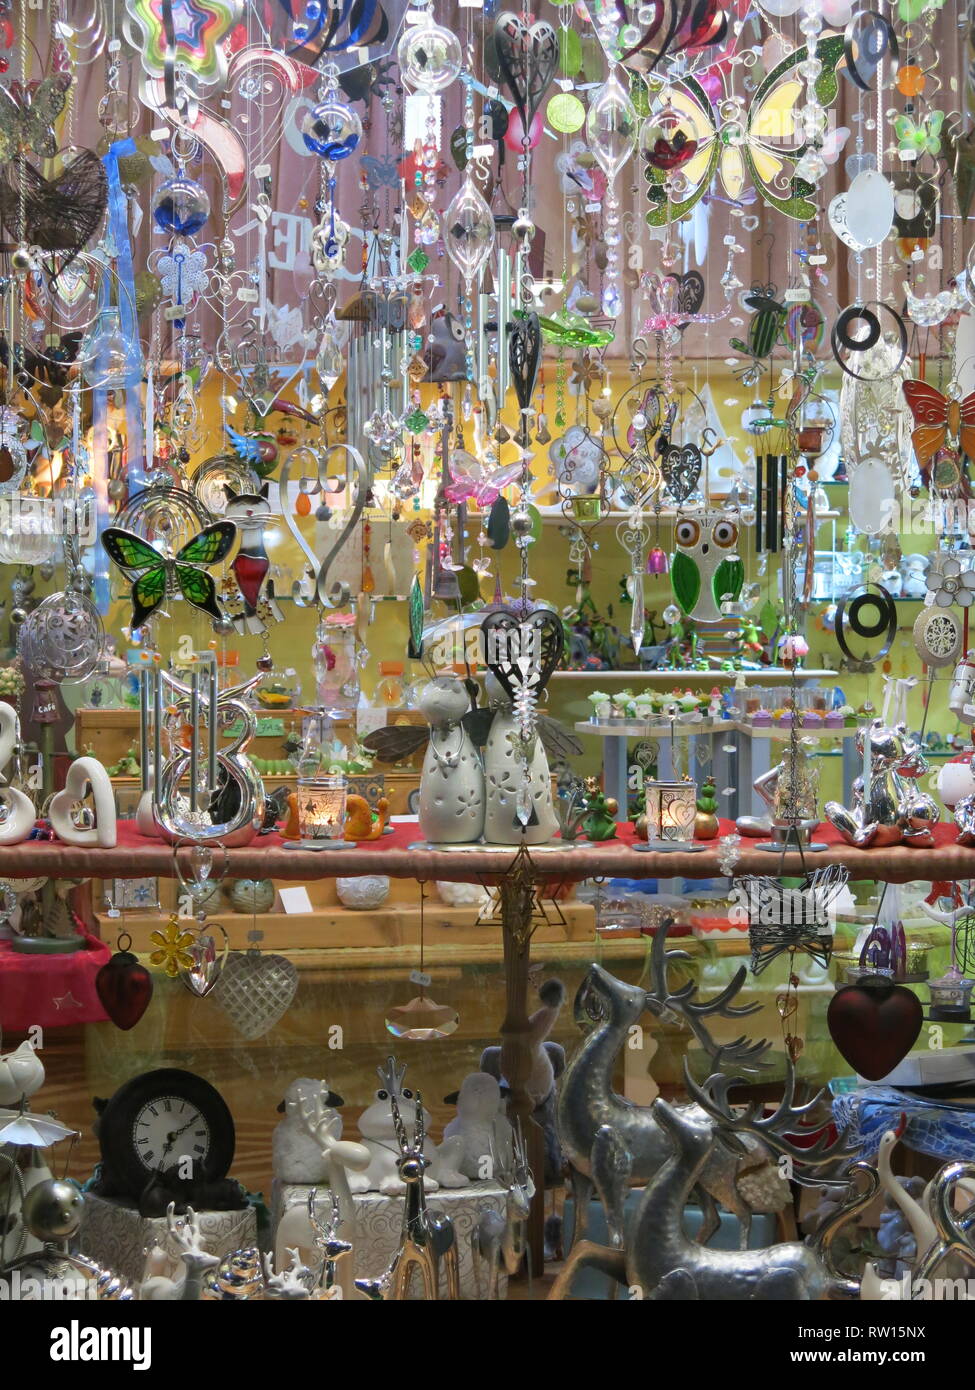 Vetrina di un negozio tipico per i turisti a Lanzarote con schermi di pretty ornamenti, angeli di vetro, windchimes, Cellulari & Farfalle; Foto Stock